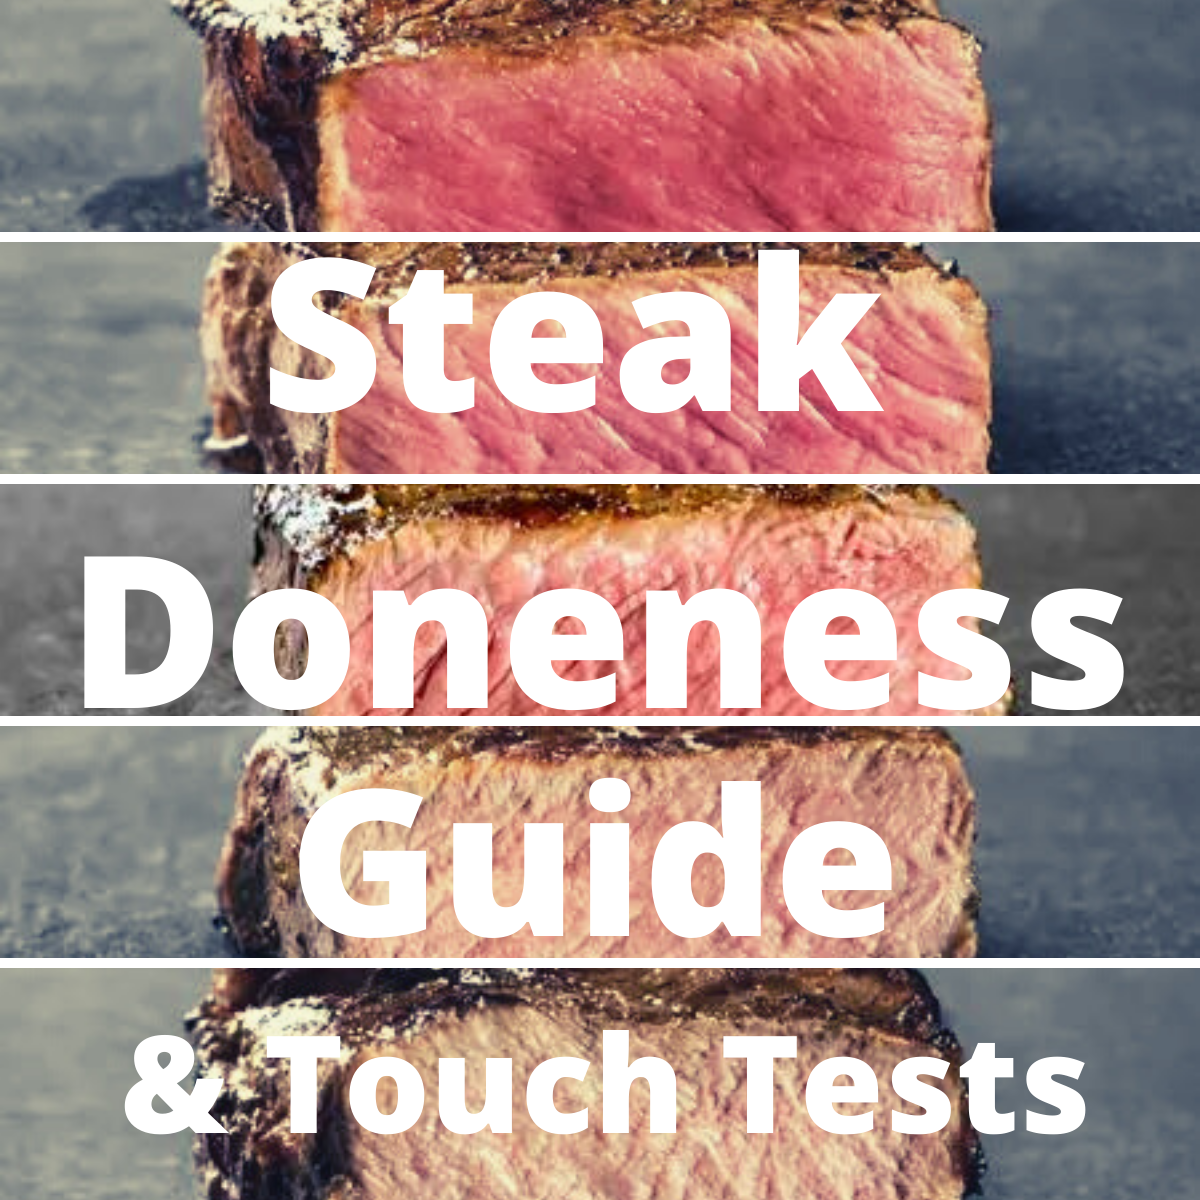 https://www.clovermeadowsbeef.com/wp-content/uploads/2021/12/steak-doneness-guide1-touch-test-clover-meadows-beef-grass-fed-beef-saint-louis-missouri.png